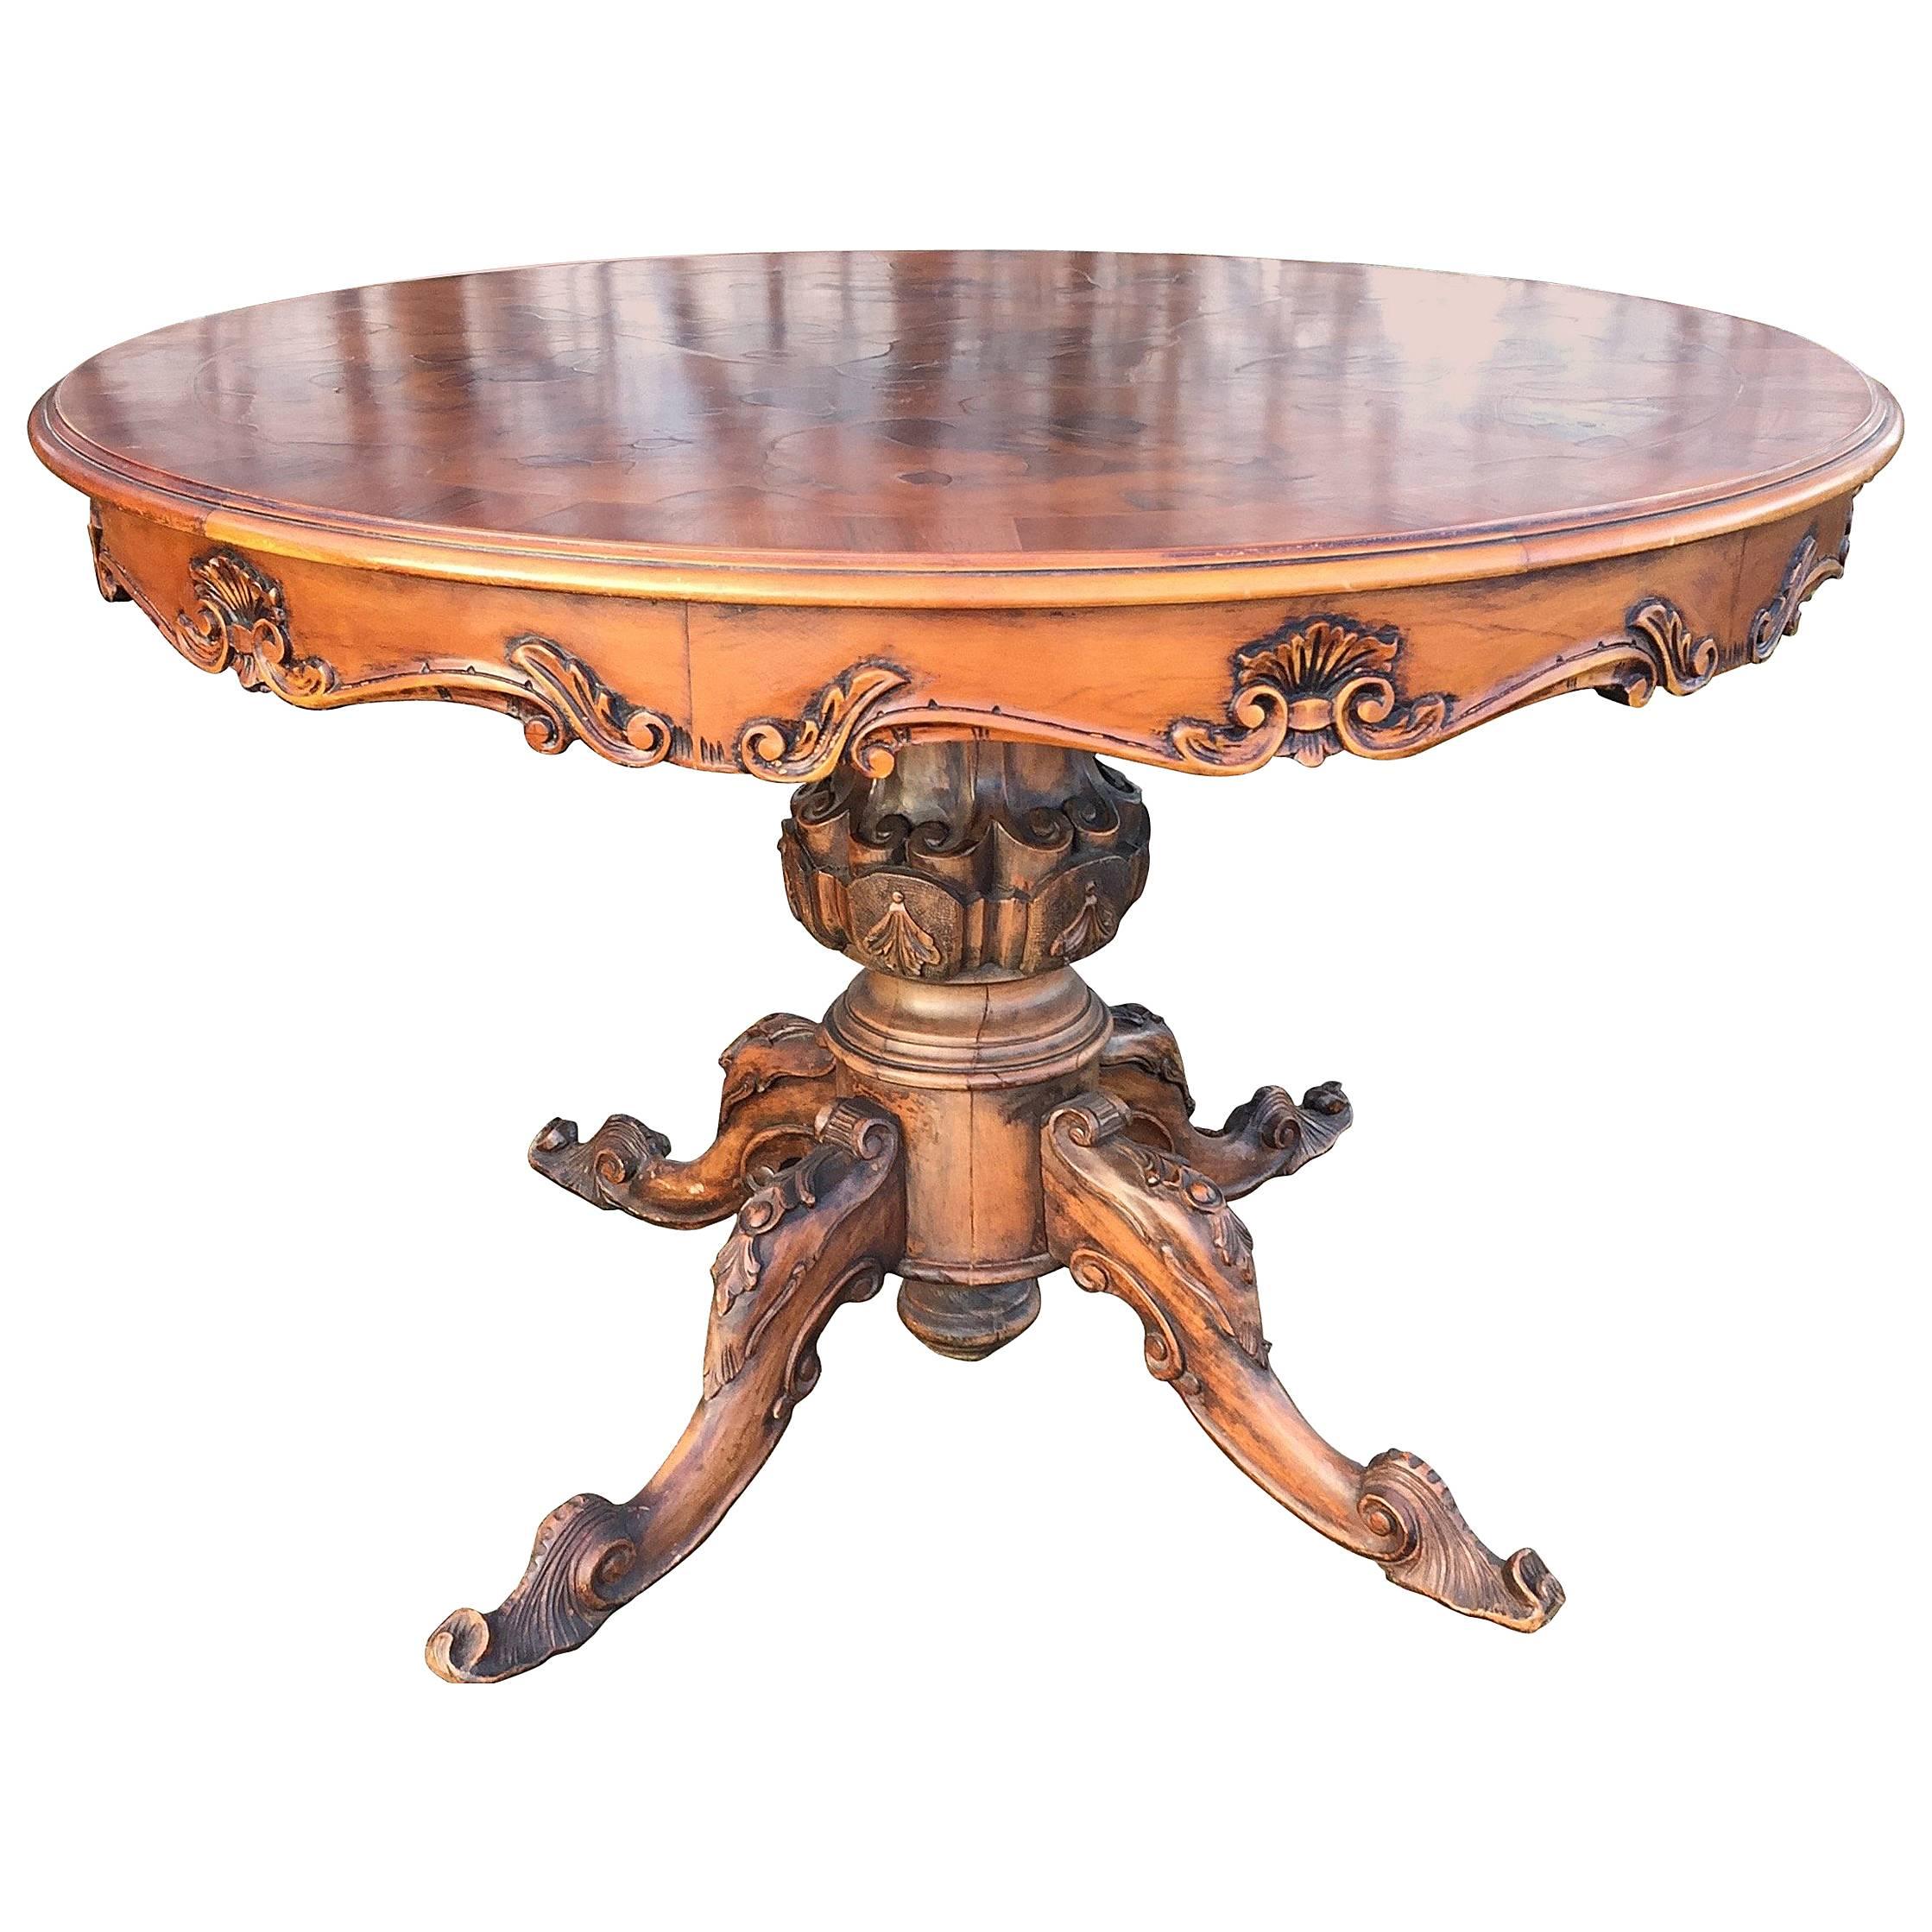 Runder Esstisch oder Mitteltisch aus geschnitztem Holz im italienischen Barockstil